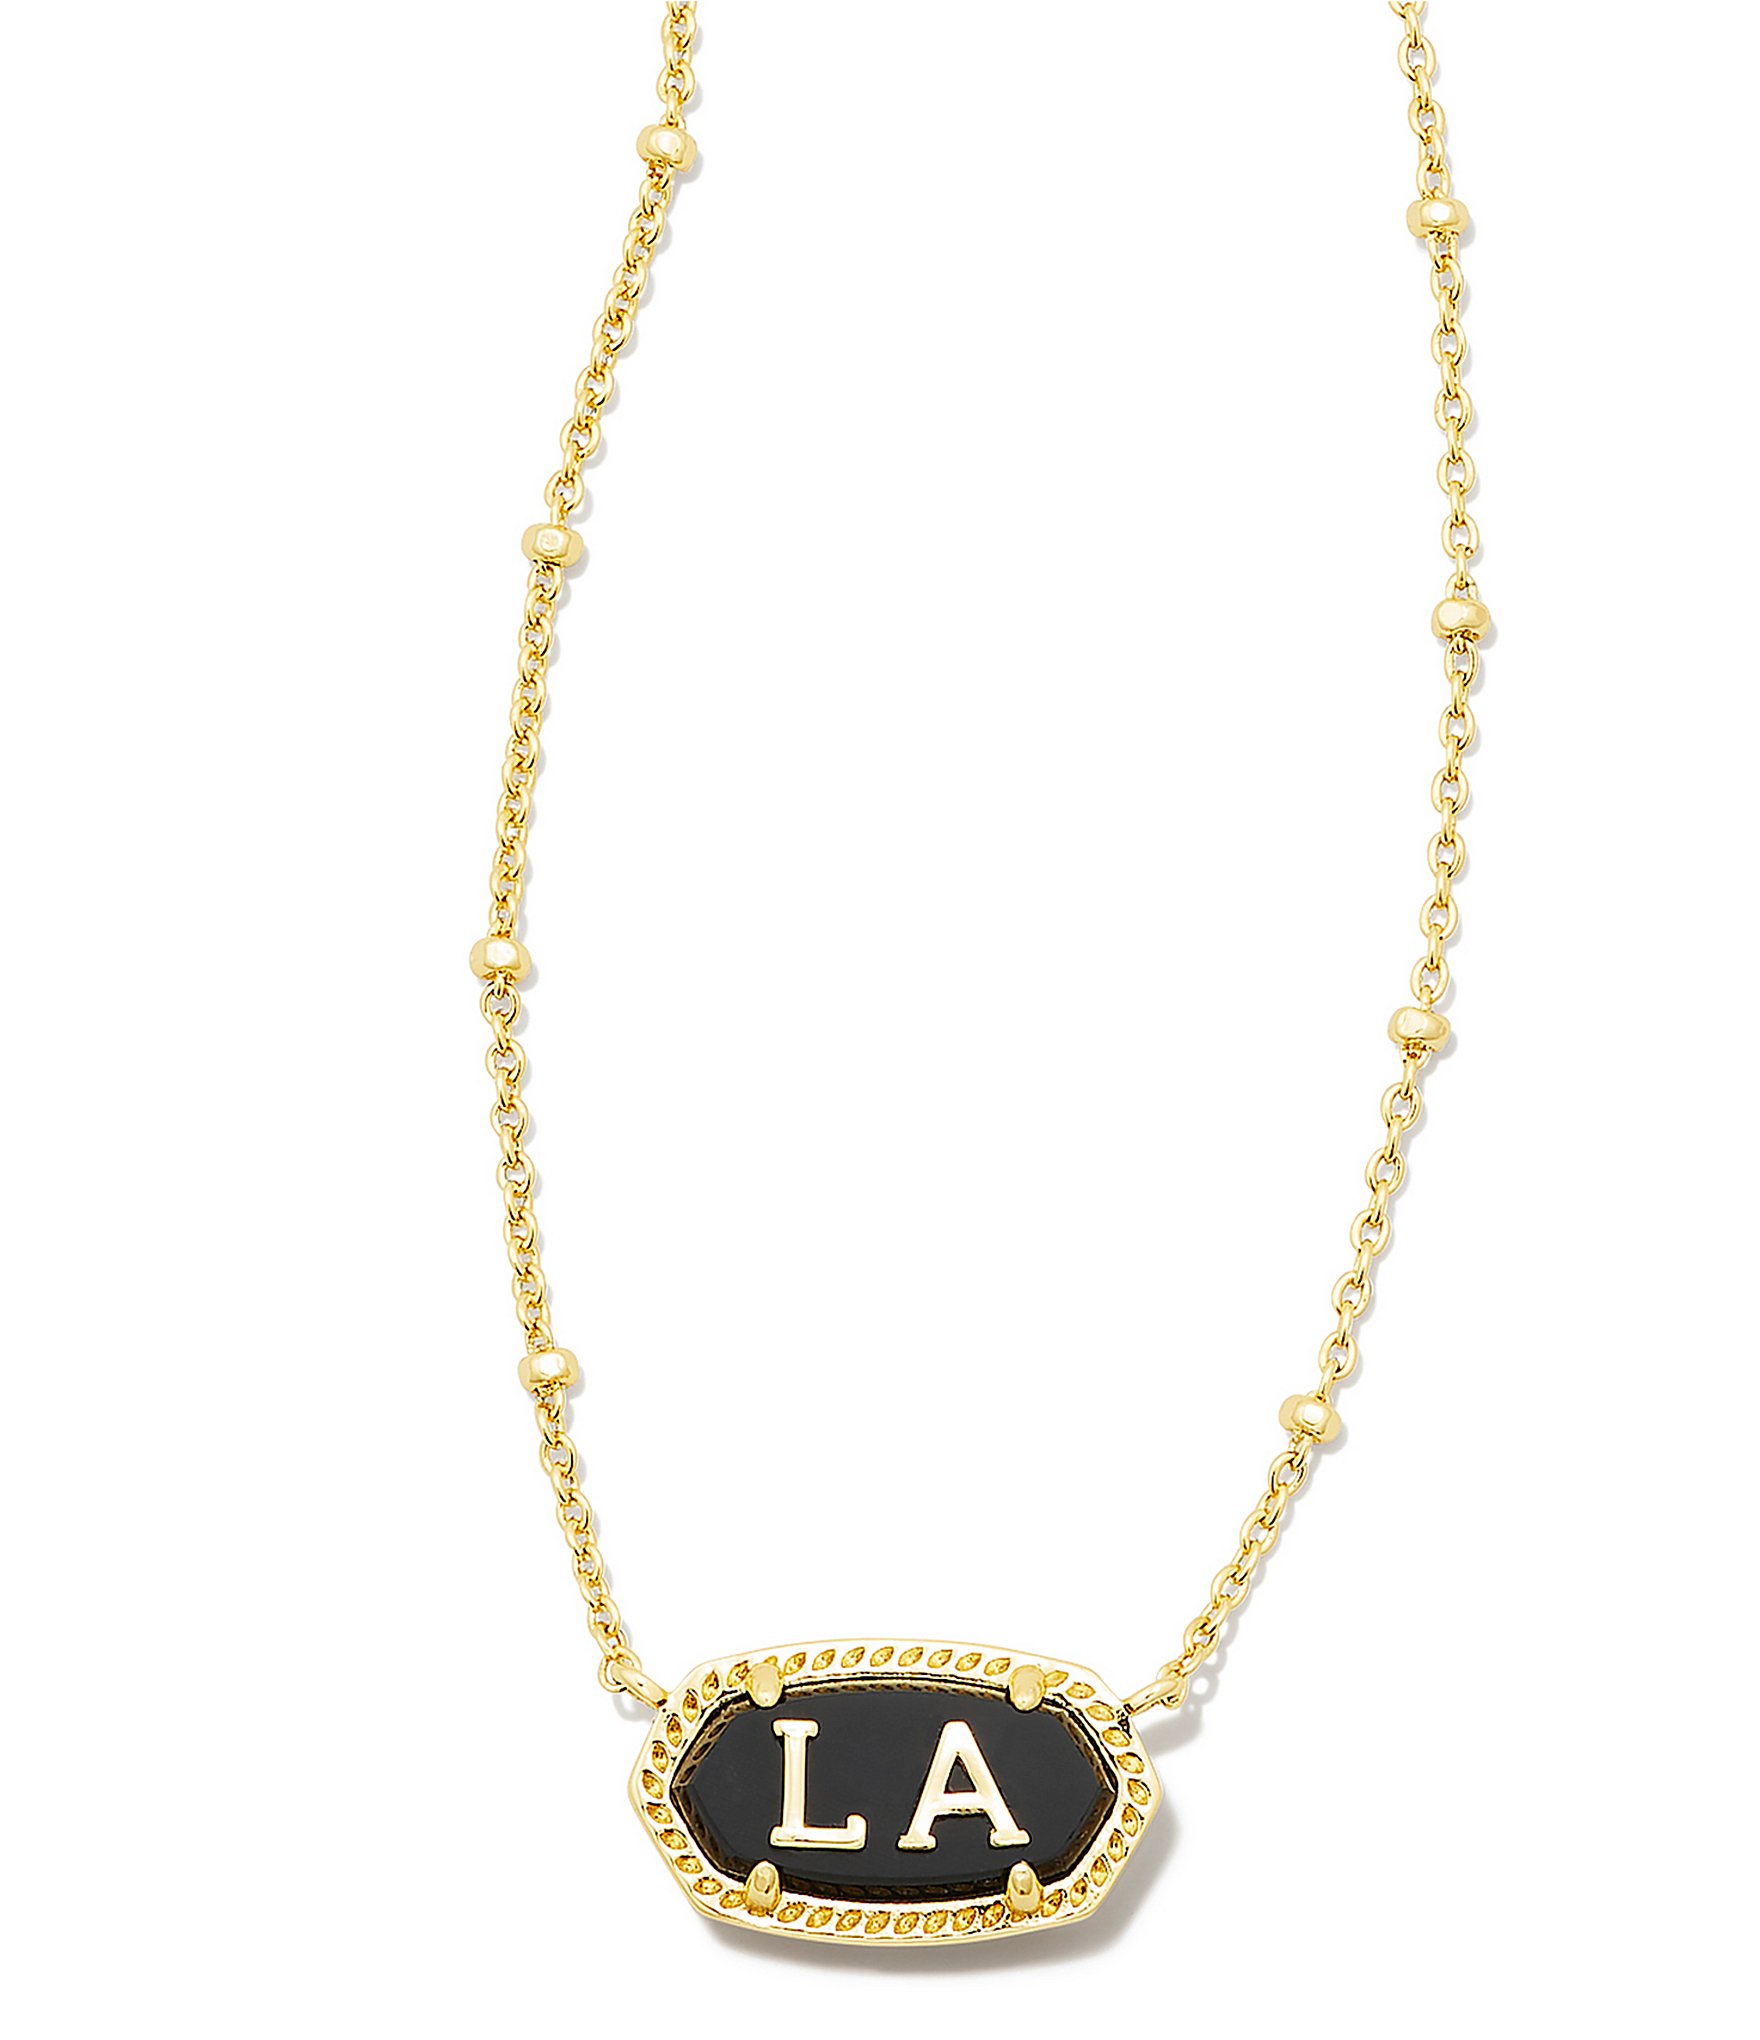 Kendra Scott Gold Disc Necklace Pendant – C'est Chic!